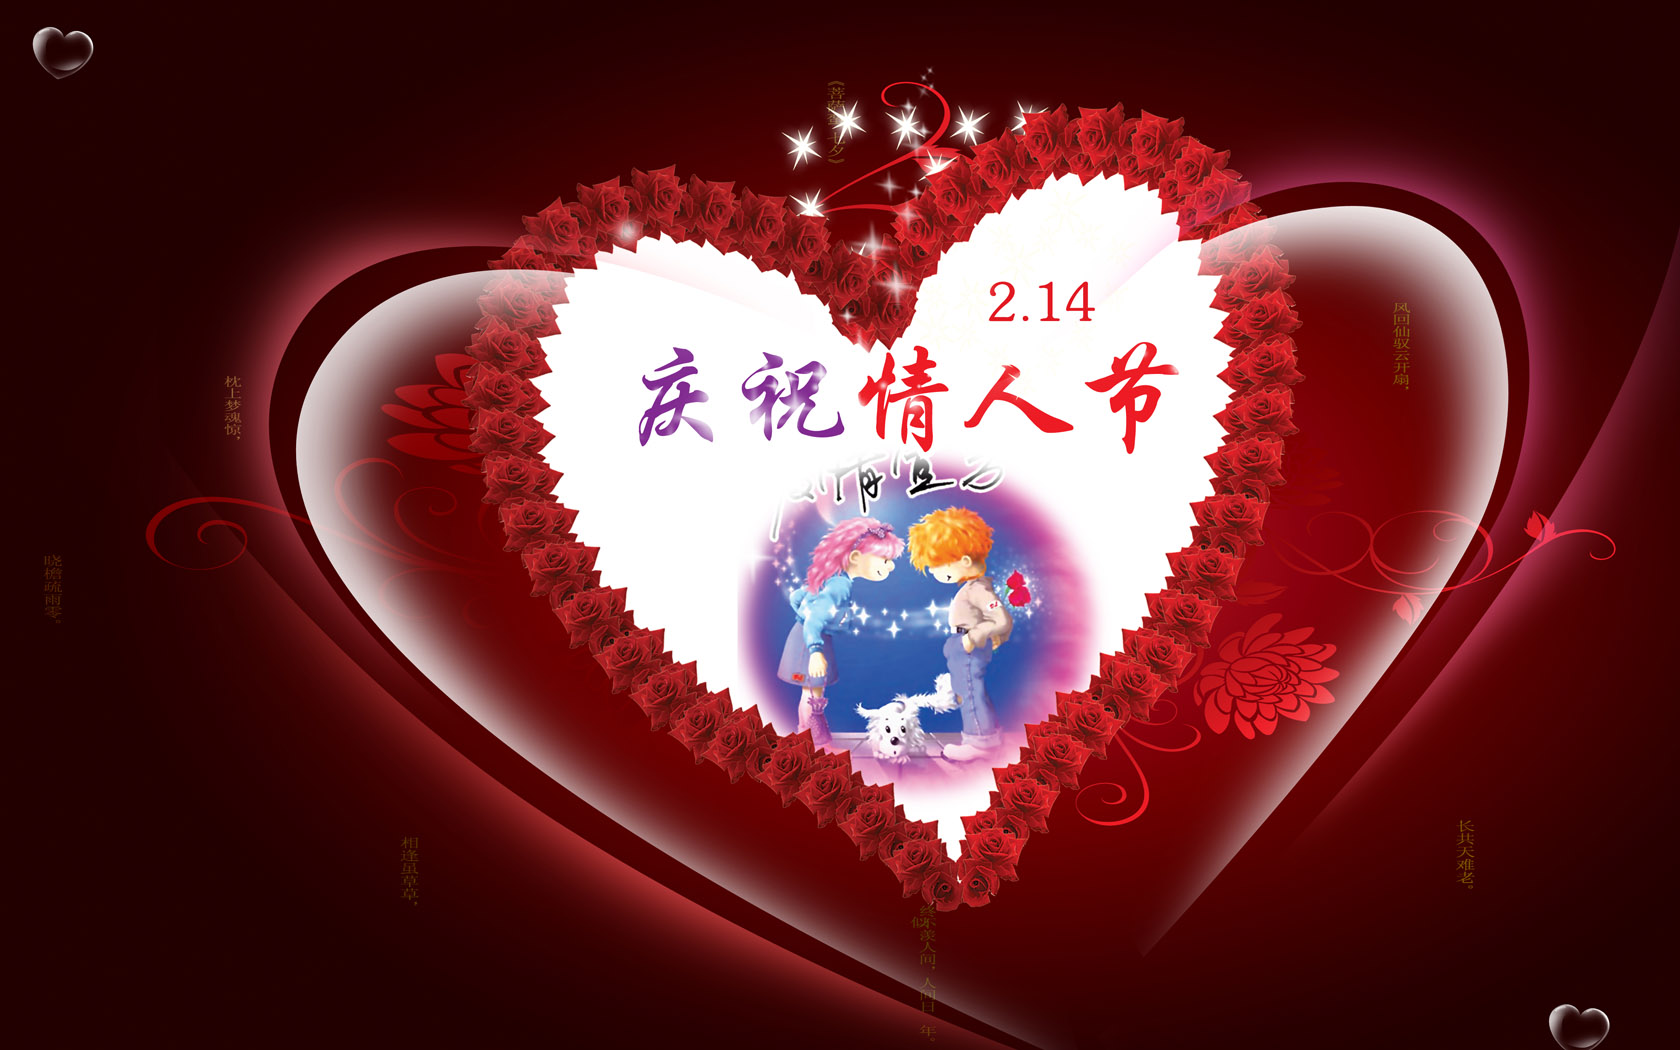 2011 Valentine's Day Cartoon Wallpaper